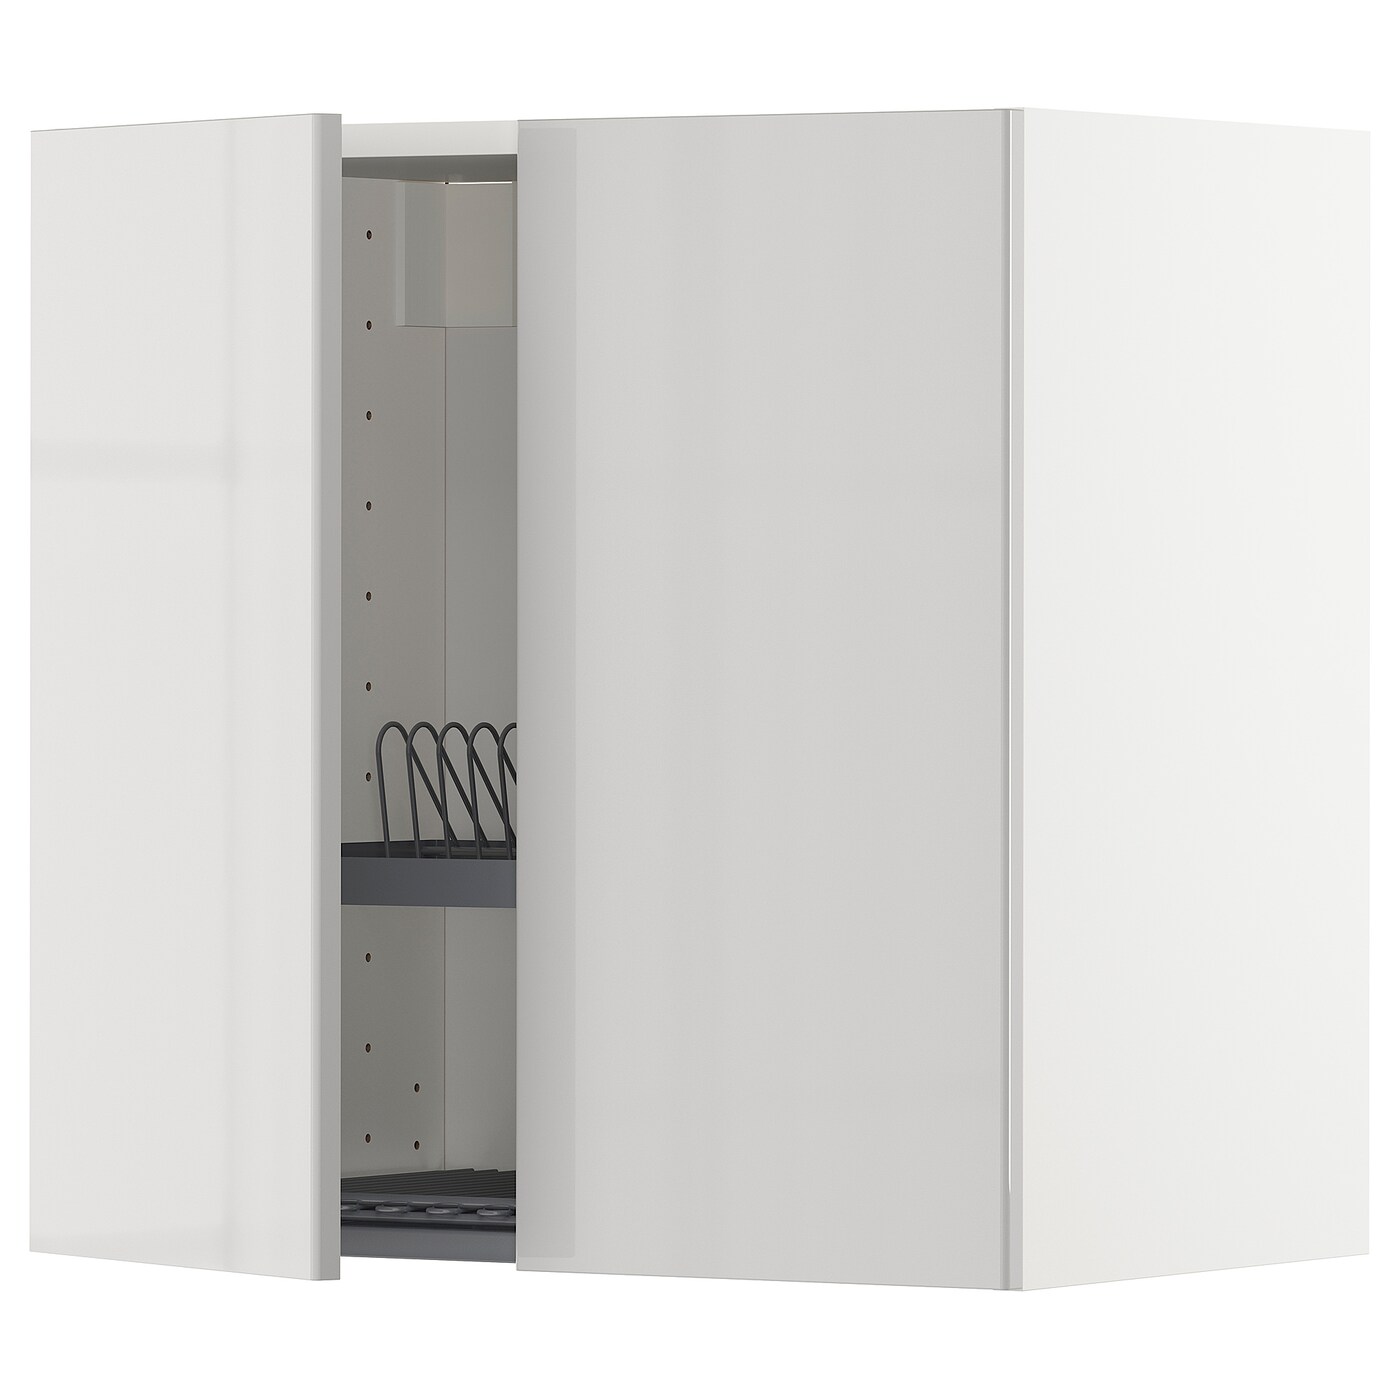 Навесной шкаф с сушилкой - METOD IKEA/ МЕТОД ИКЕА, 60х60 см, белый/светло-серый